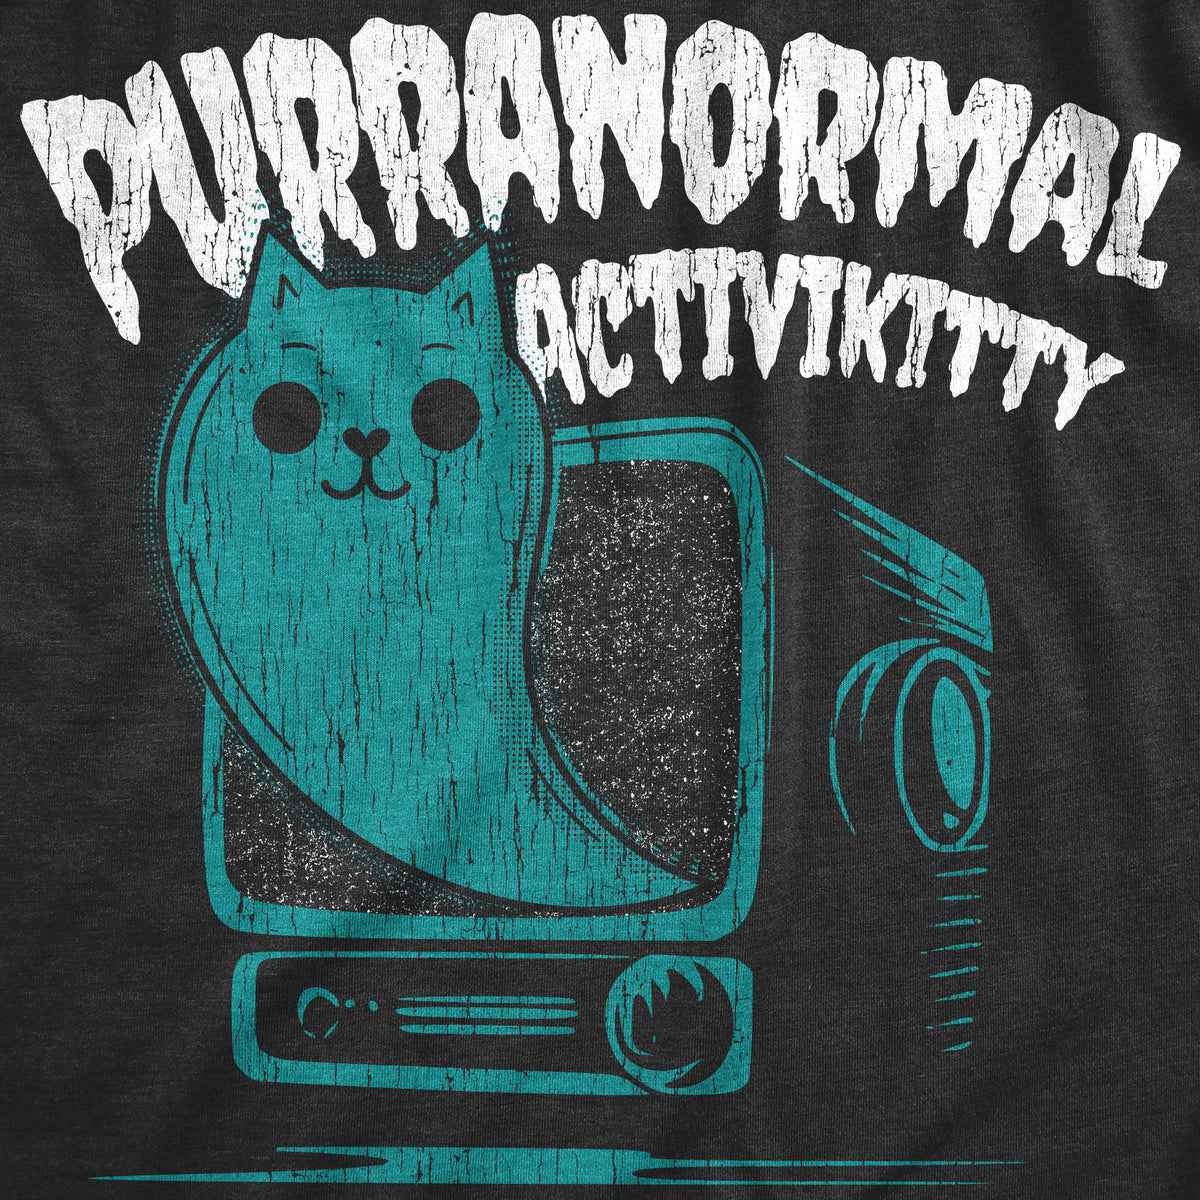 Purranormal Activikitty - Paranormal Cat Women&#39;s T Shirt